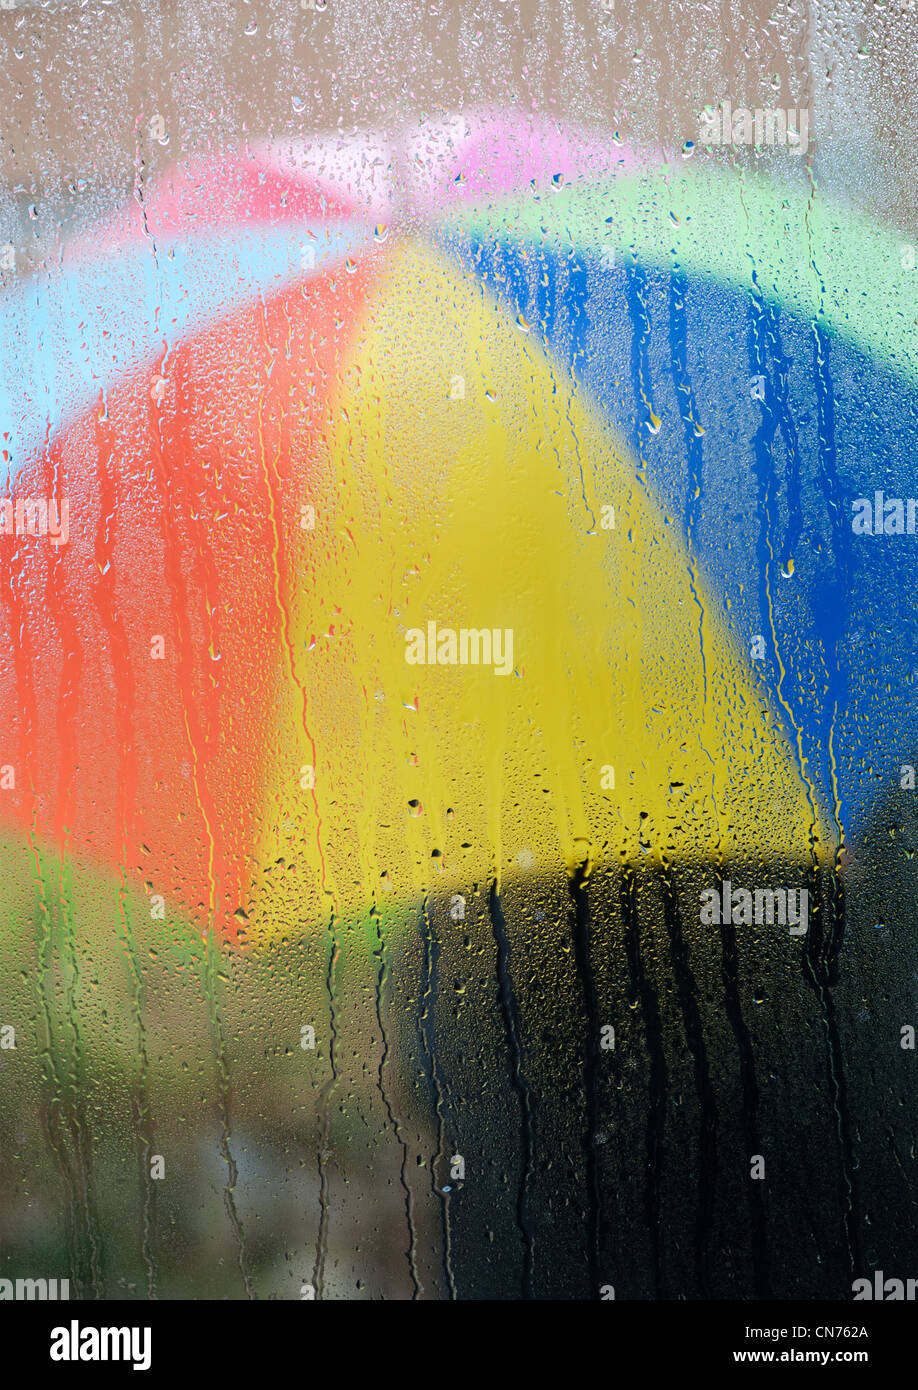 Gouttes de pluie sur un carreau de fenêtre avec une personne titulaire d'un parapluie à l'extérieur de couleur arc-en-ciel Banque D'Images